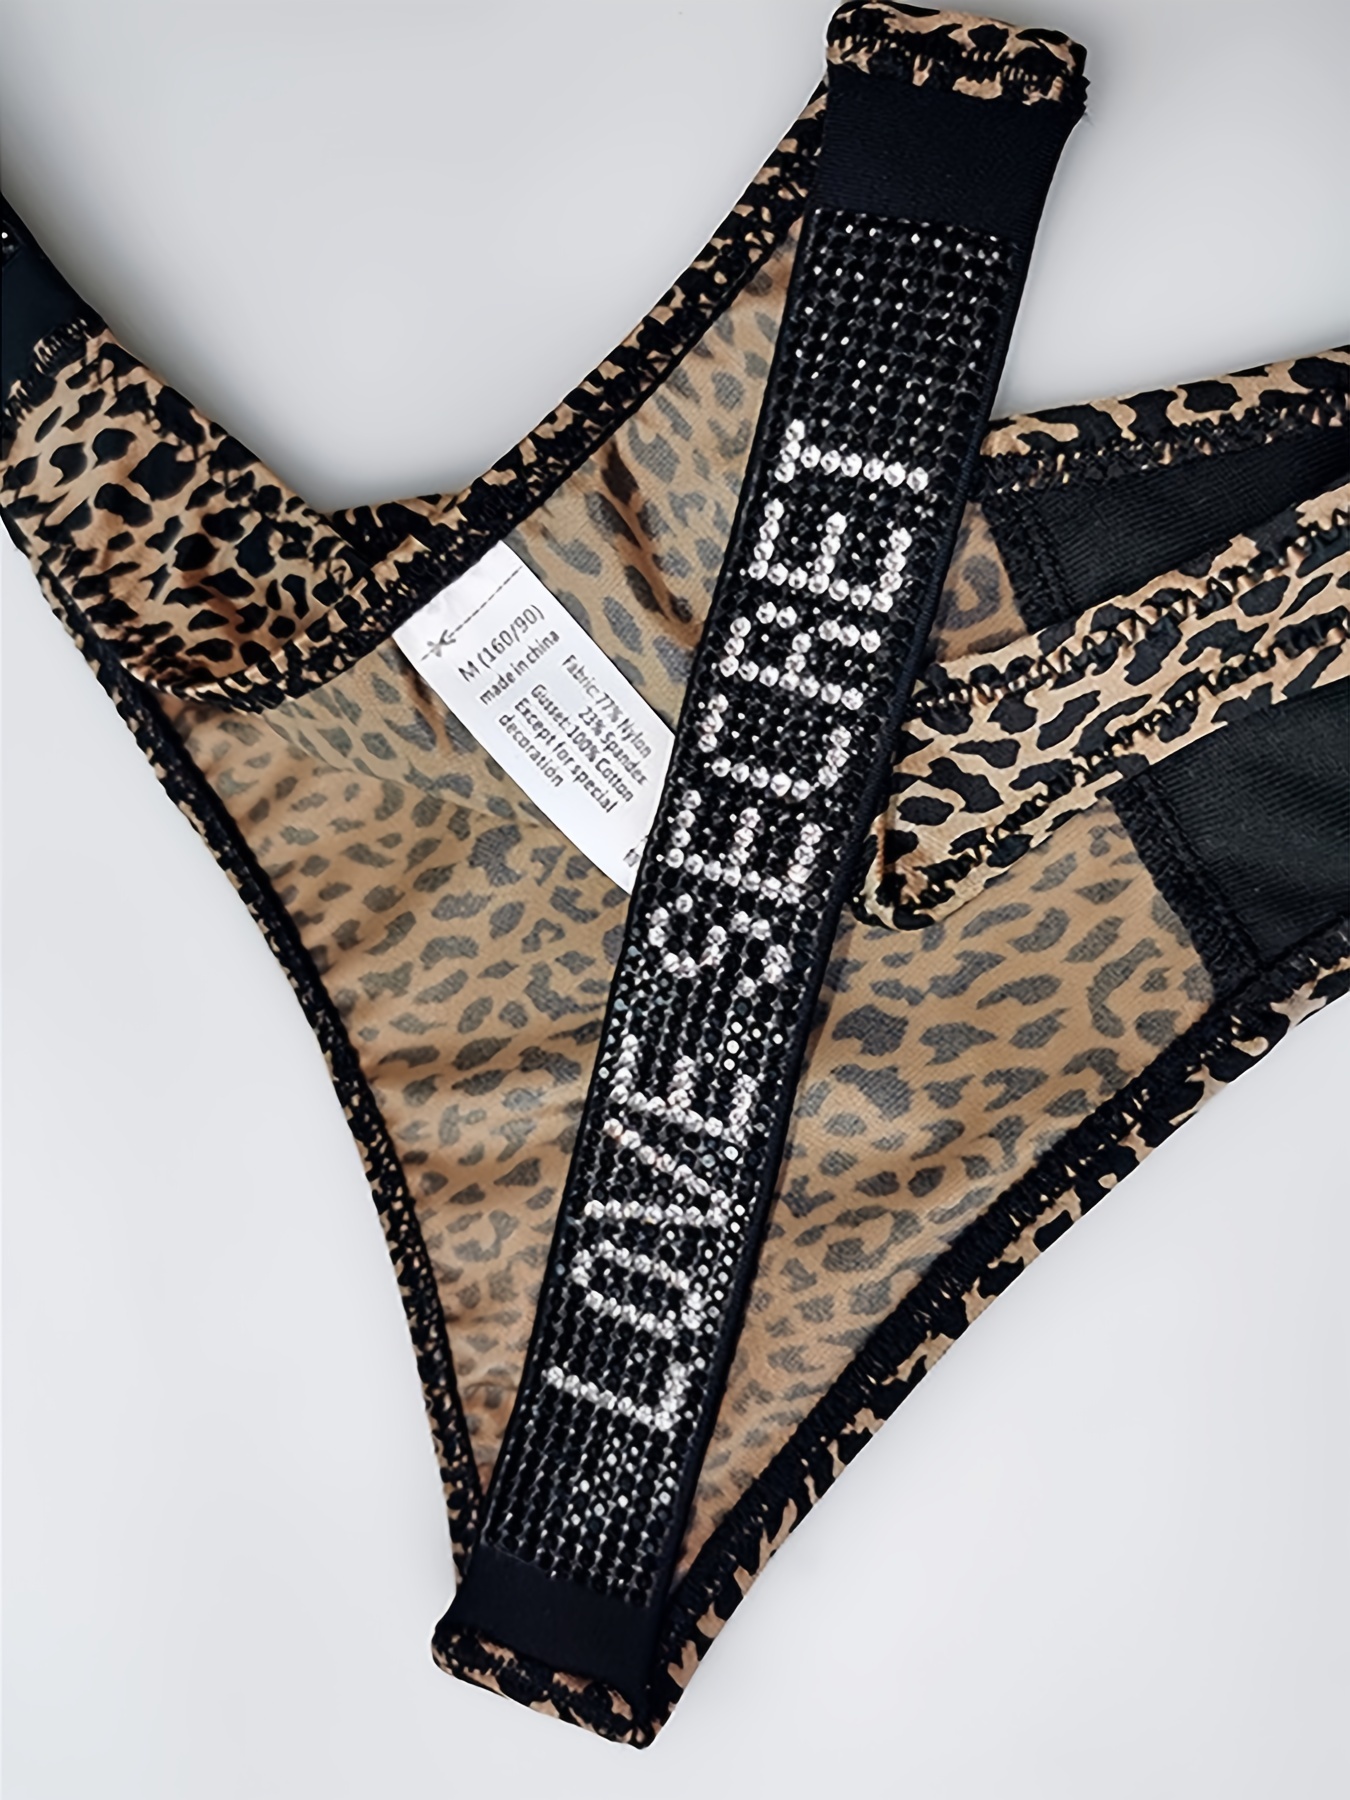 Cotton G String Leopard Women Panties Sexy Briefs Thong Low Waist